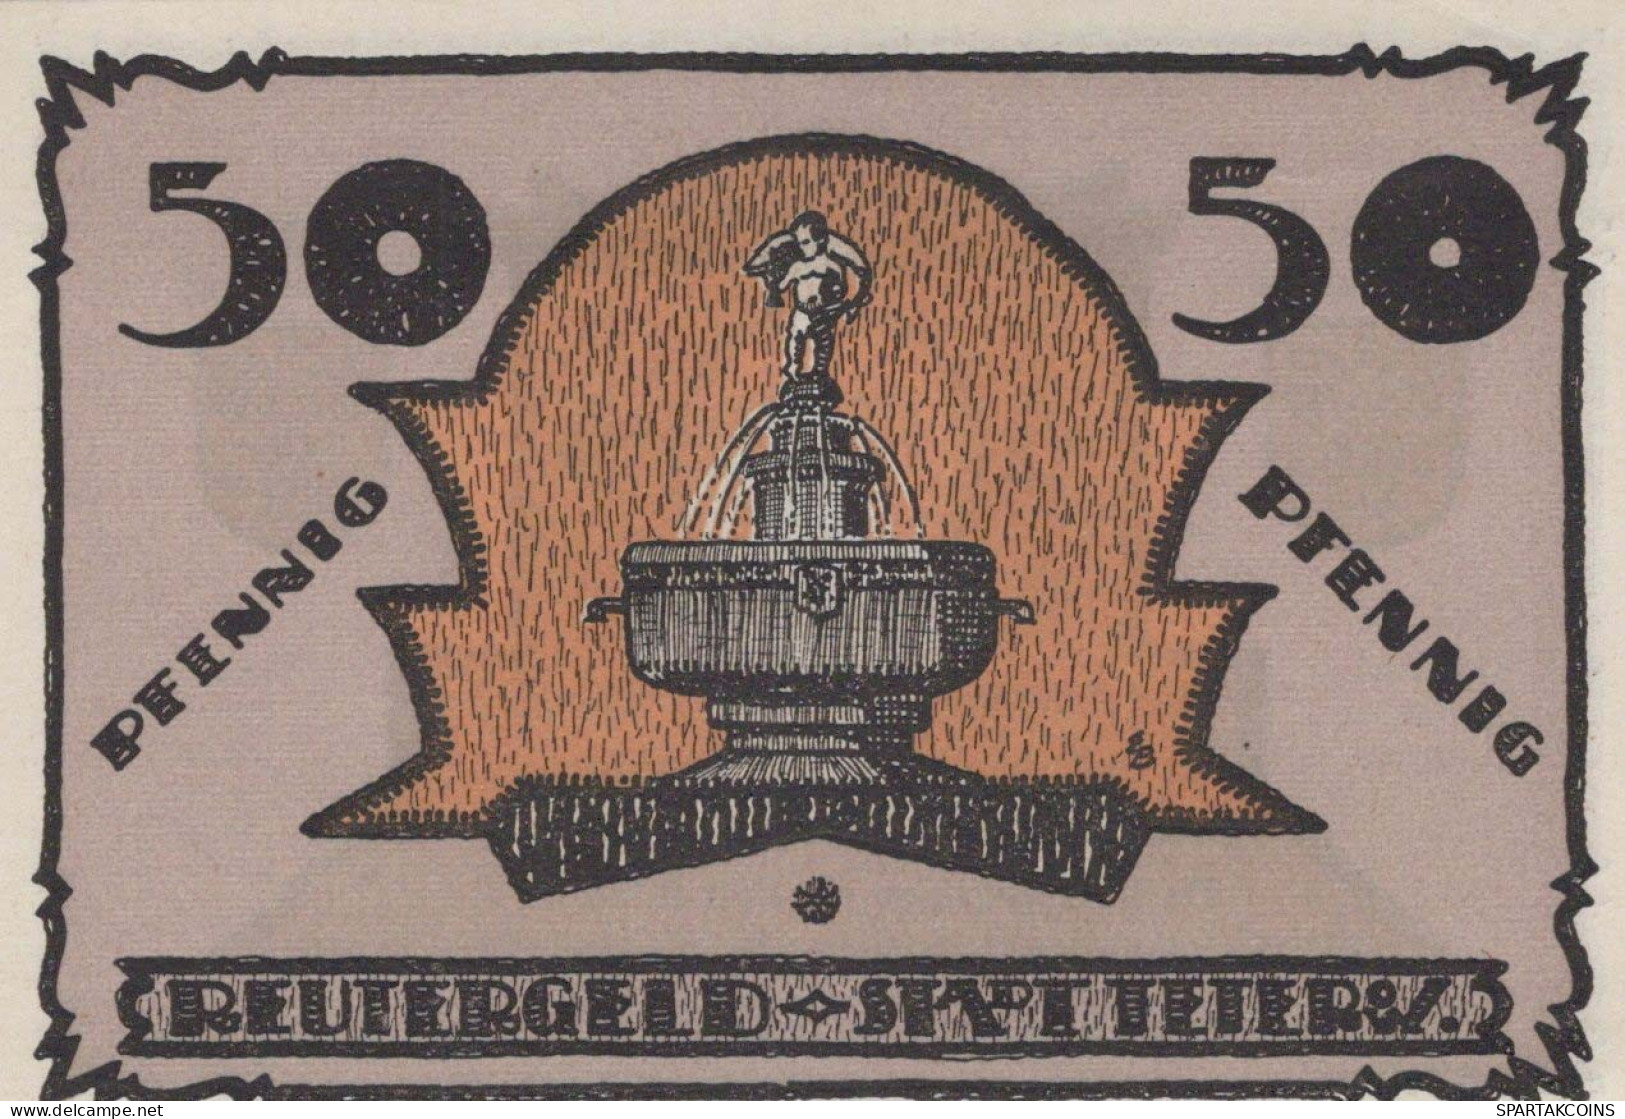 50 PFENNIG 1921 Stadt TETEROW Mecklenburg-Schwerin UNC DEUTSCHLAND #PJ062 - [11] Local Banknote Issues